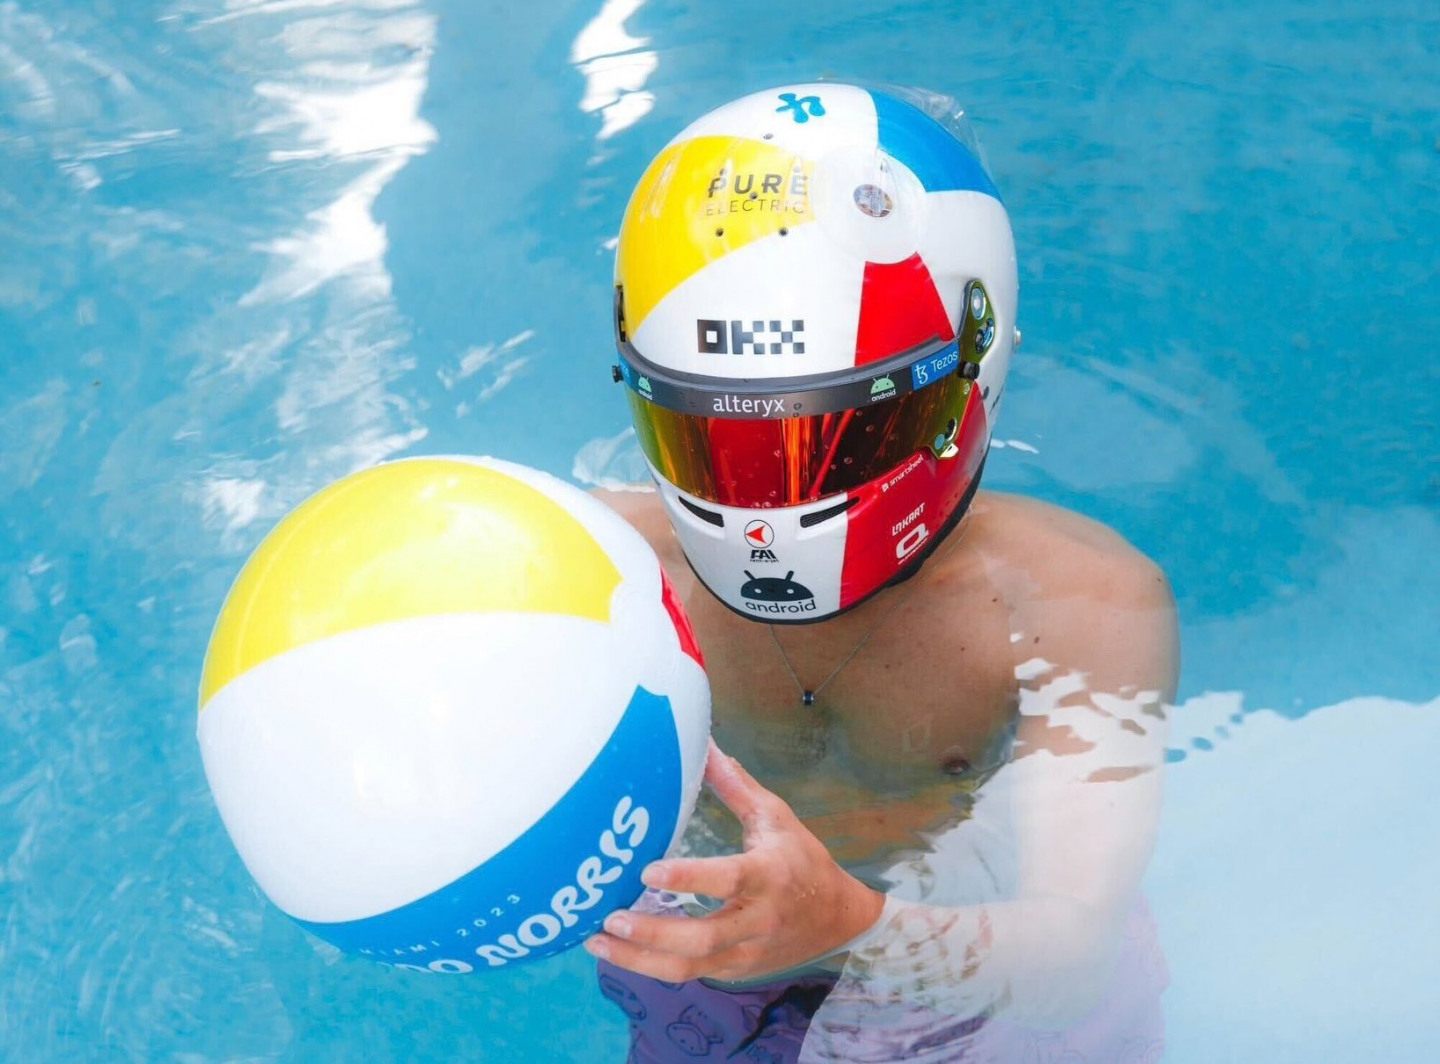 Шлем Ландо Норриса на Гран При Майами © Соцсети